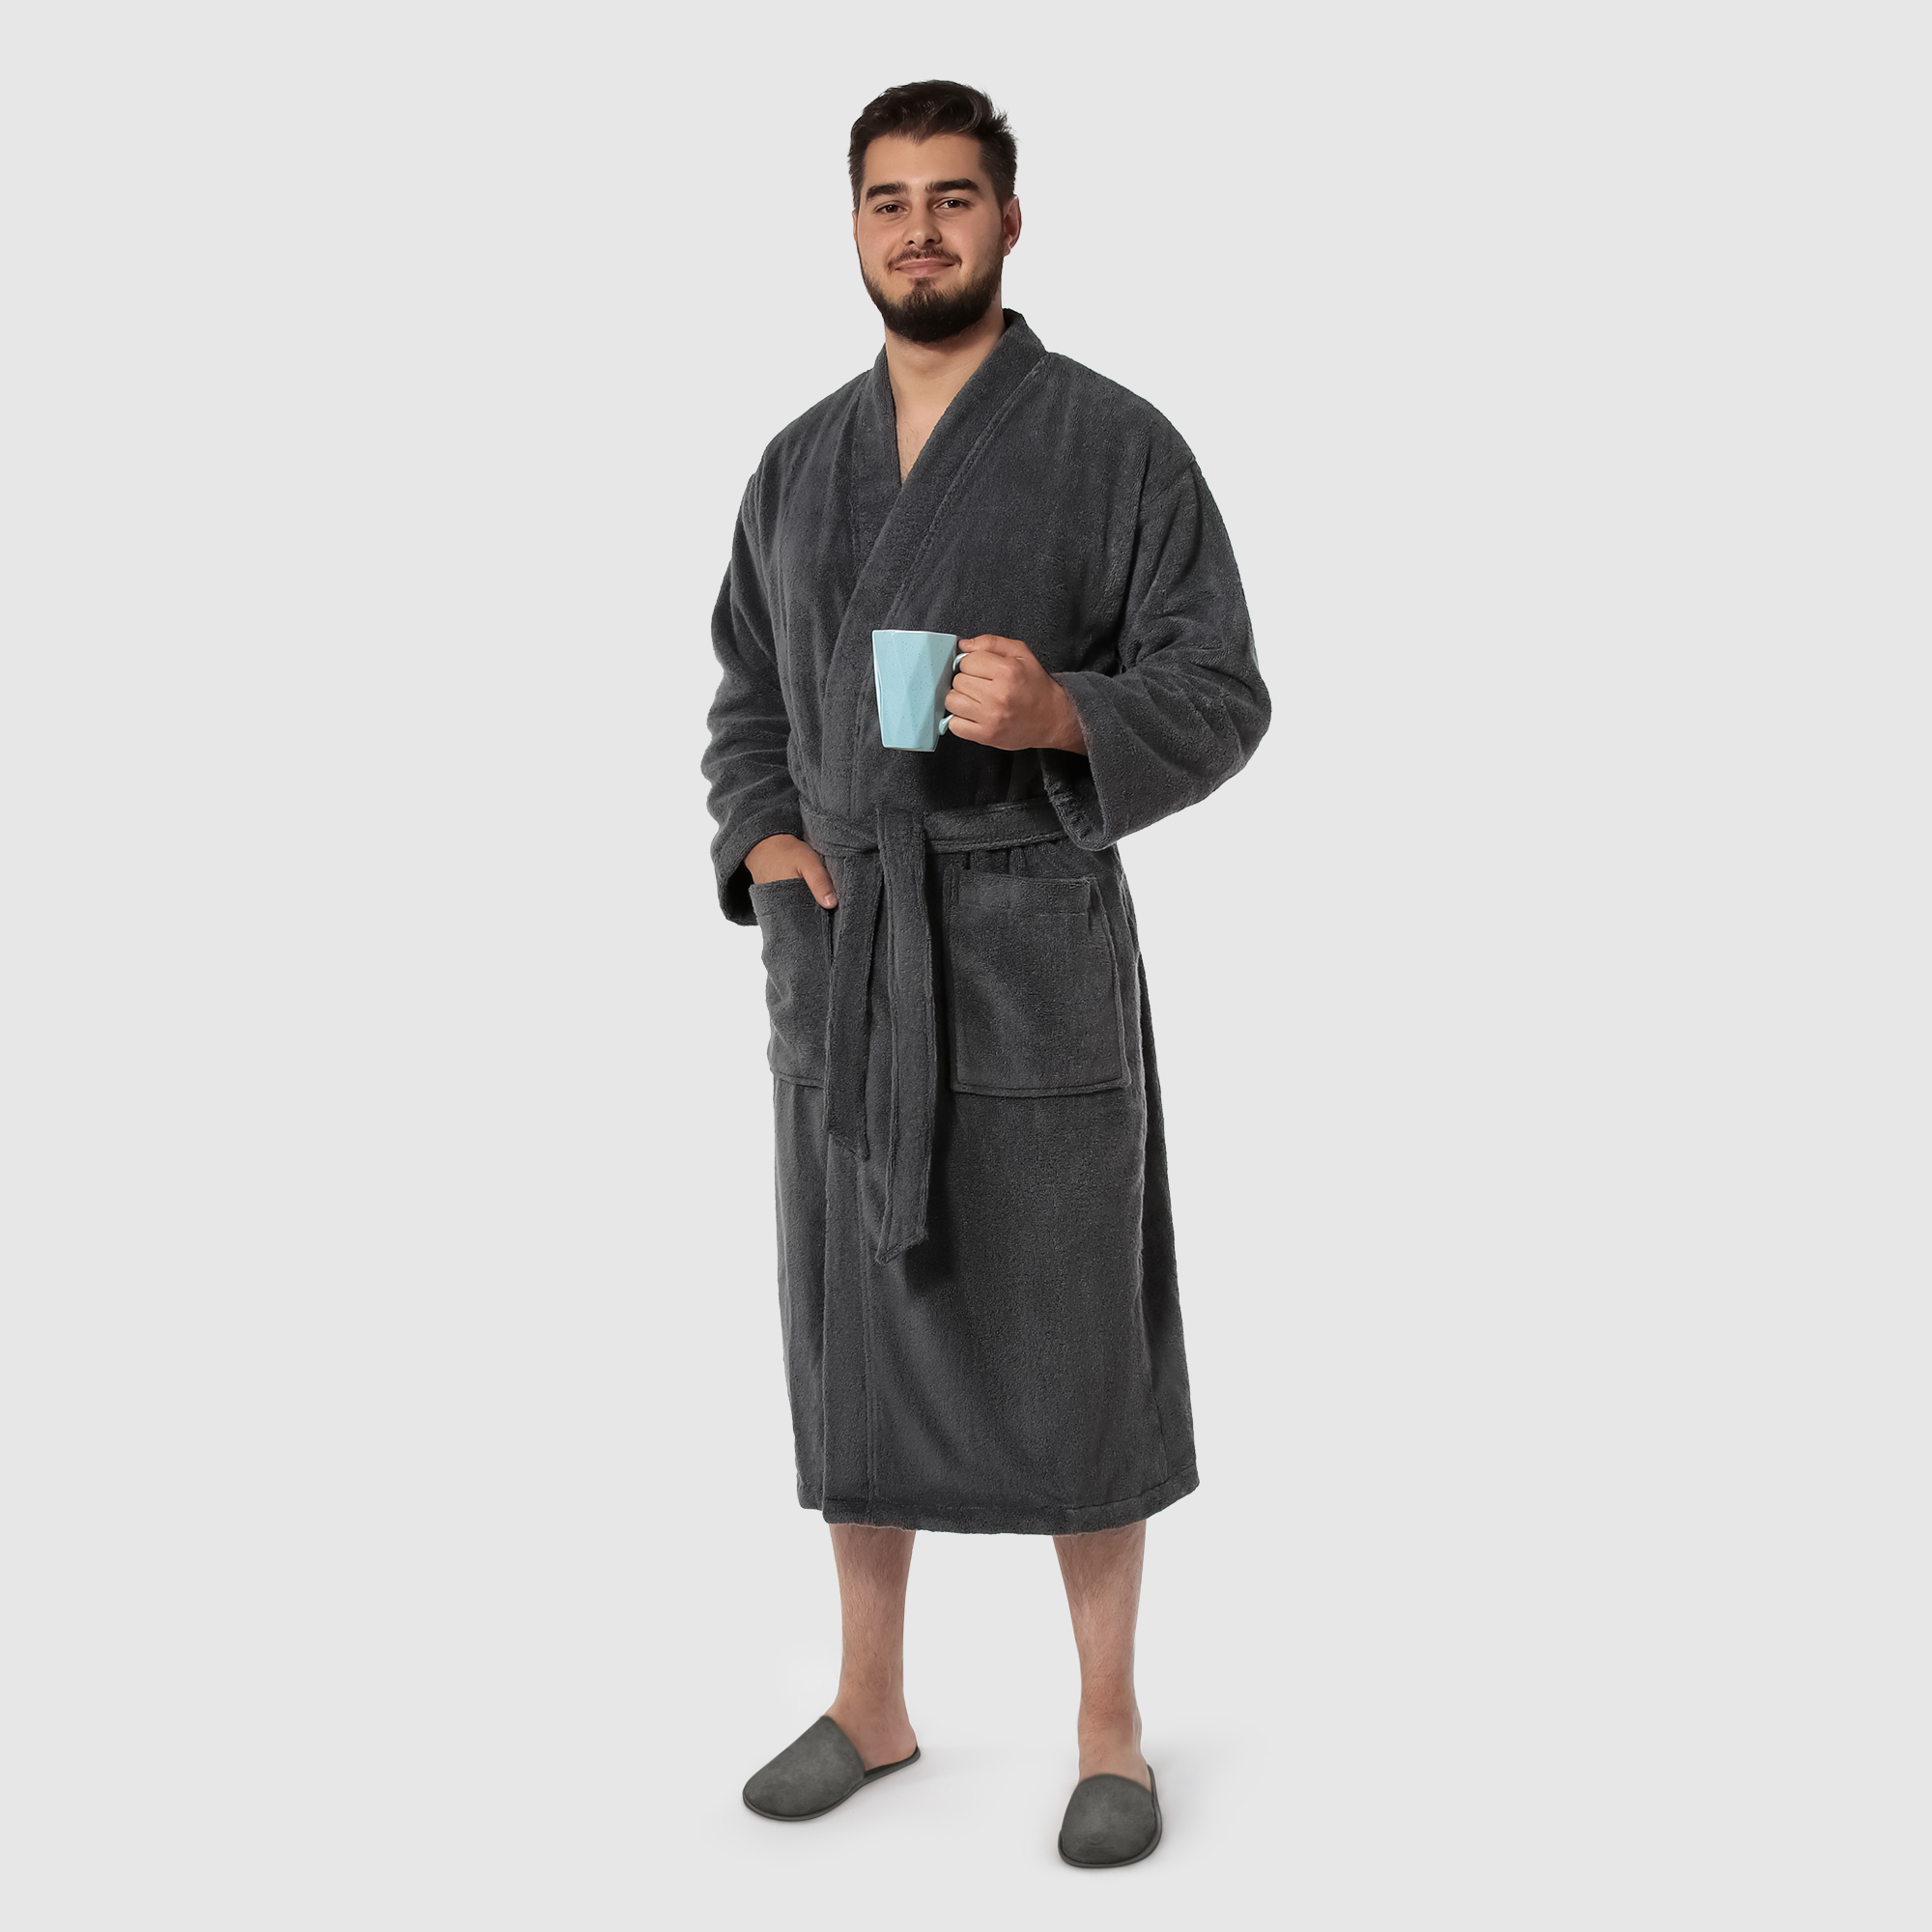 Мужской халат Maisonette Parla тёмно-серый S халат мужской asil sauna brown xl вафельный с капюшоном